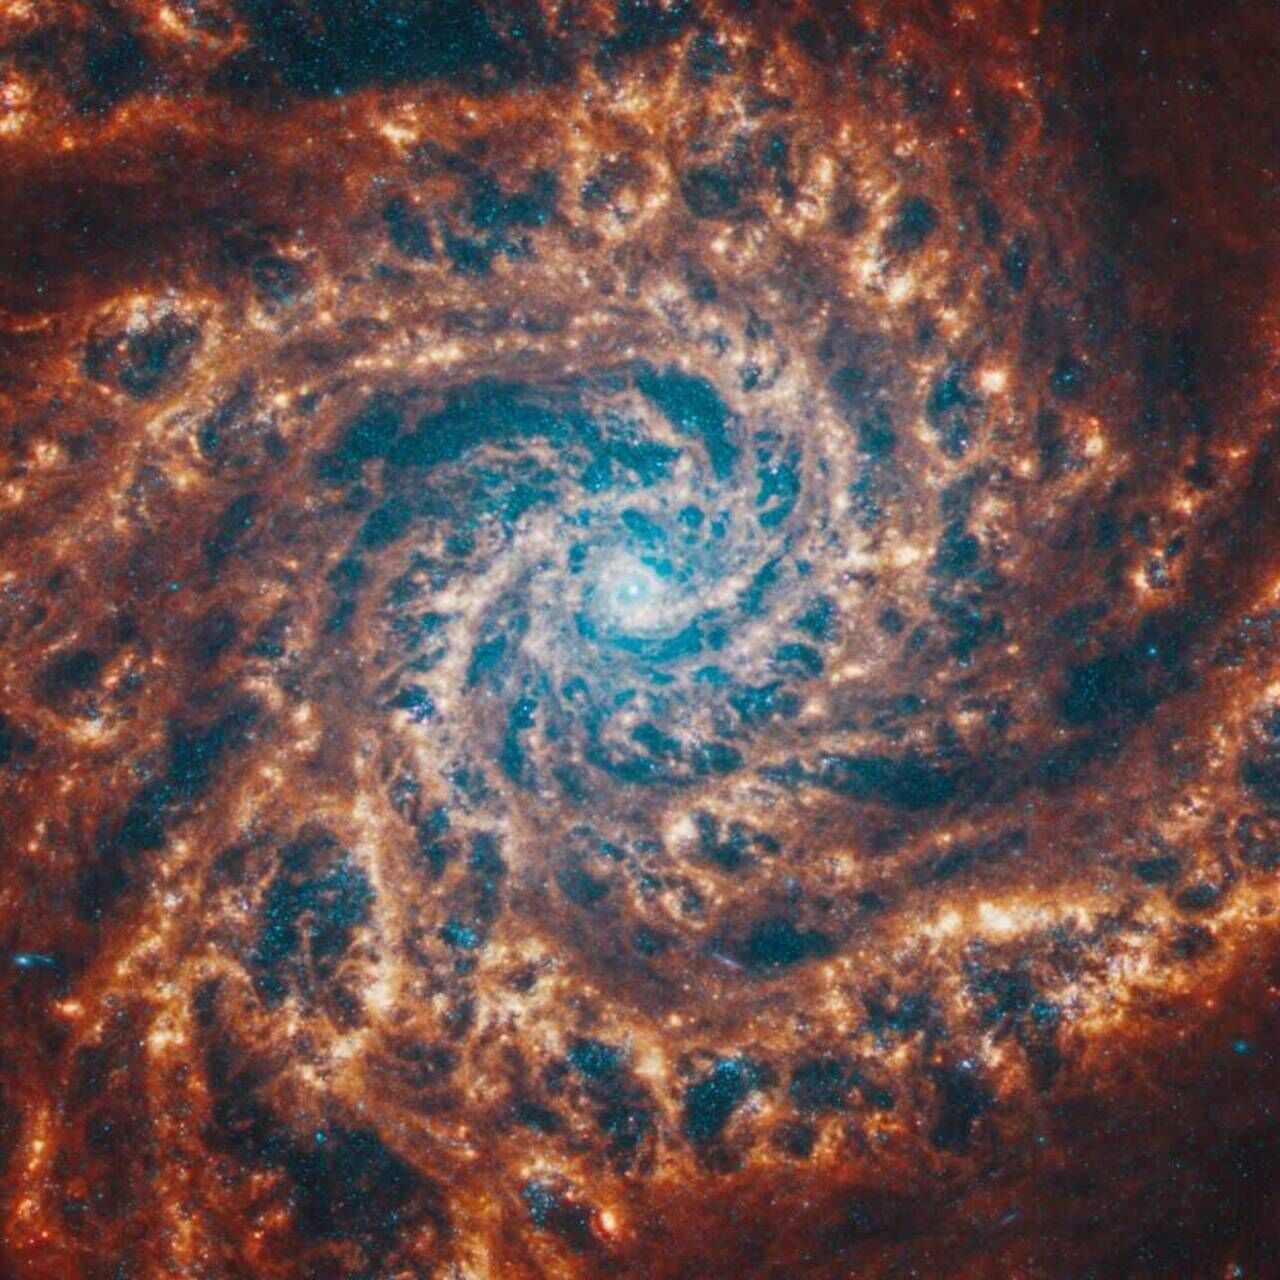 Master in Space Systems: en spiralgalax avbildad av James Webb-teleskopet